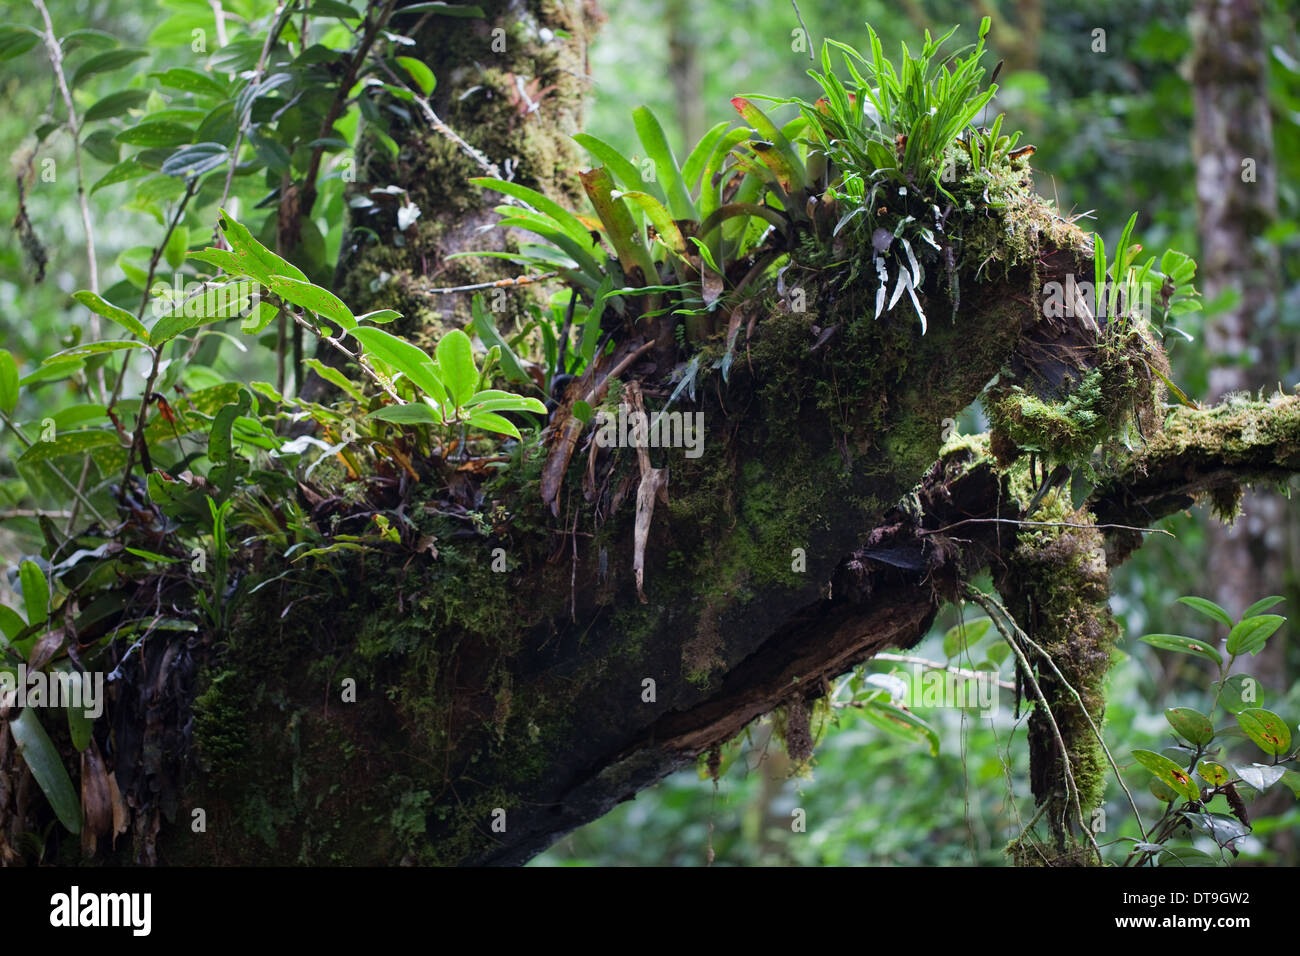 Las epifitas, incluyendo bromelias, crece en las extremidades y troncos de árboles en bosques montanos de lluvia y bosque nuboso. El Savegre. Costa Rica. Foto de stock